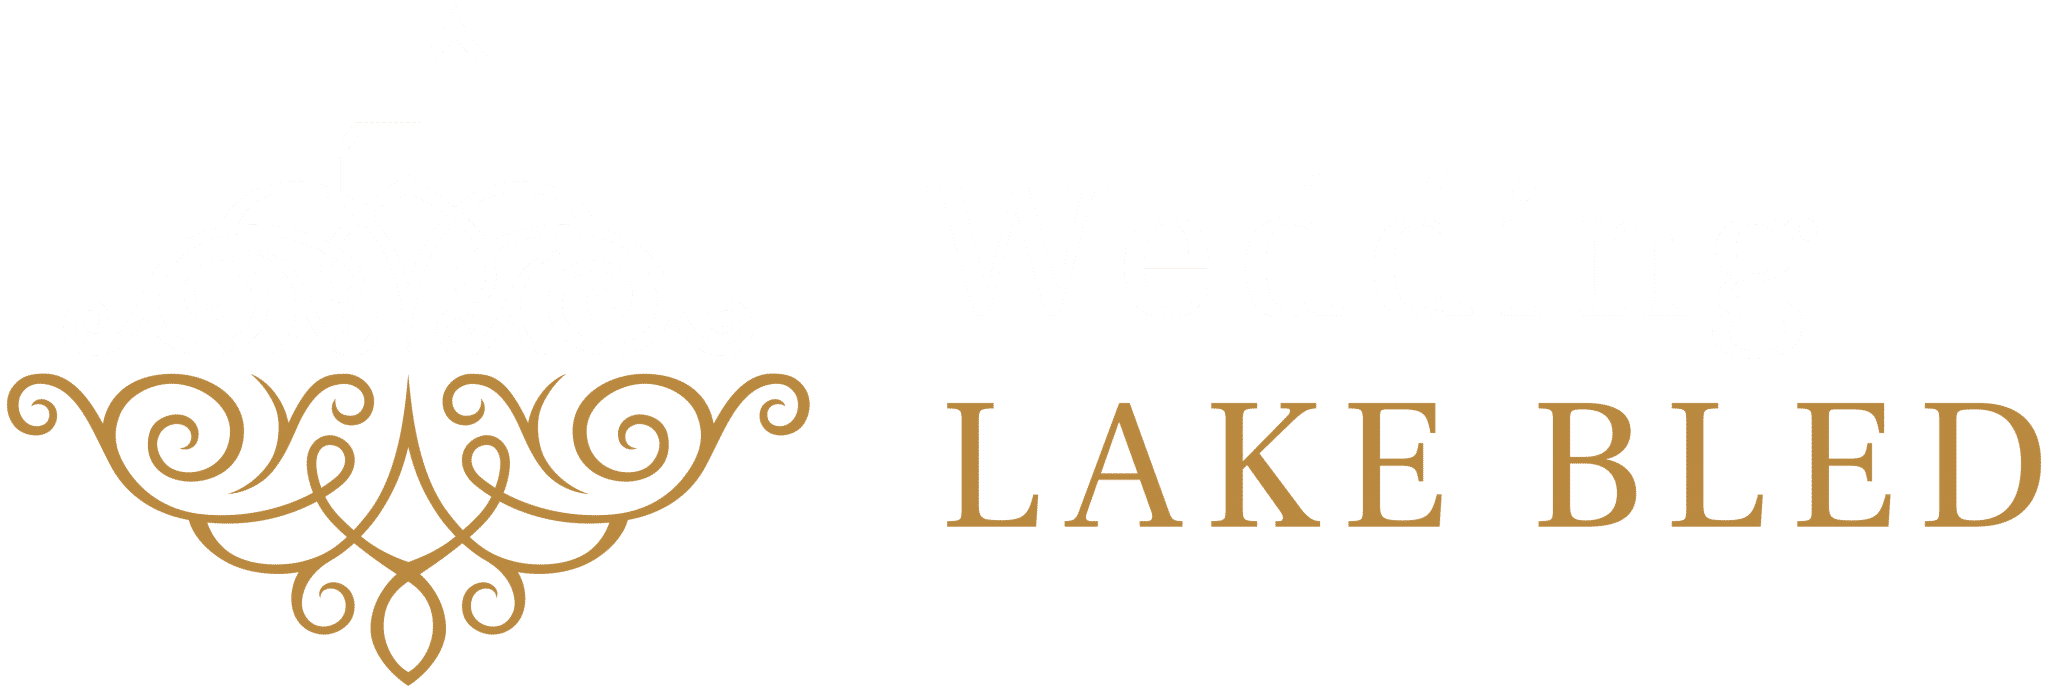 Wedding Lake Bled Logo